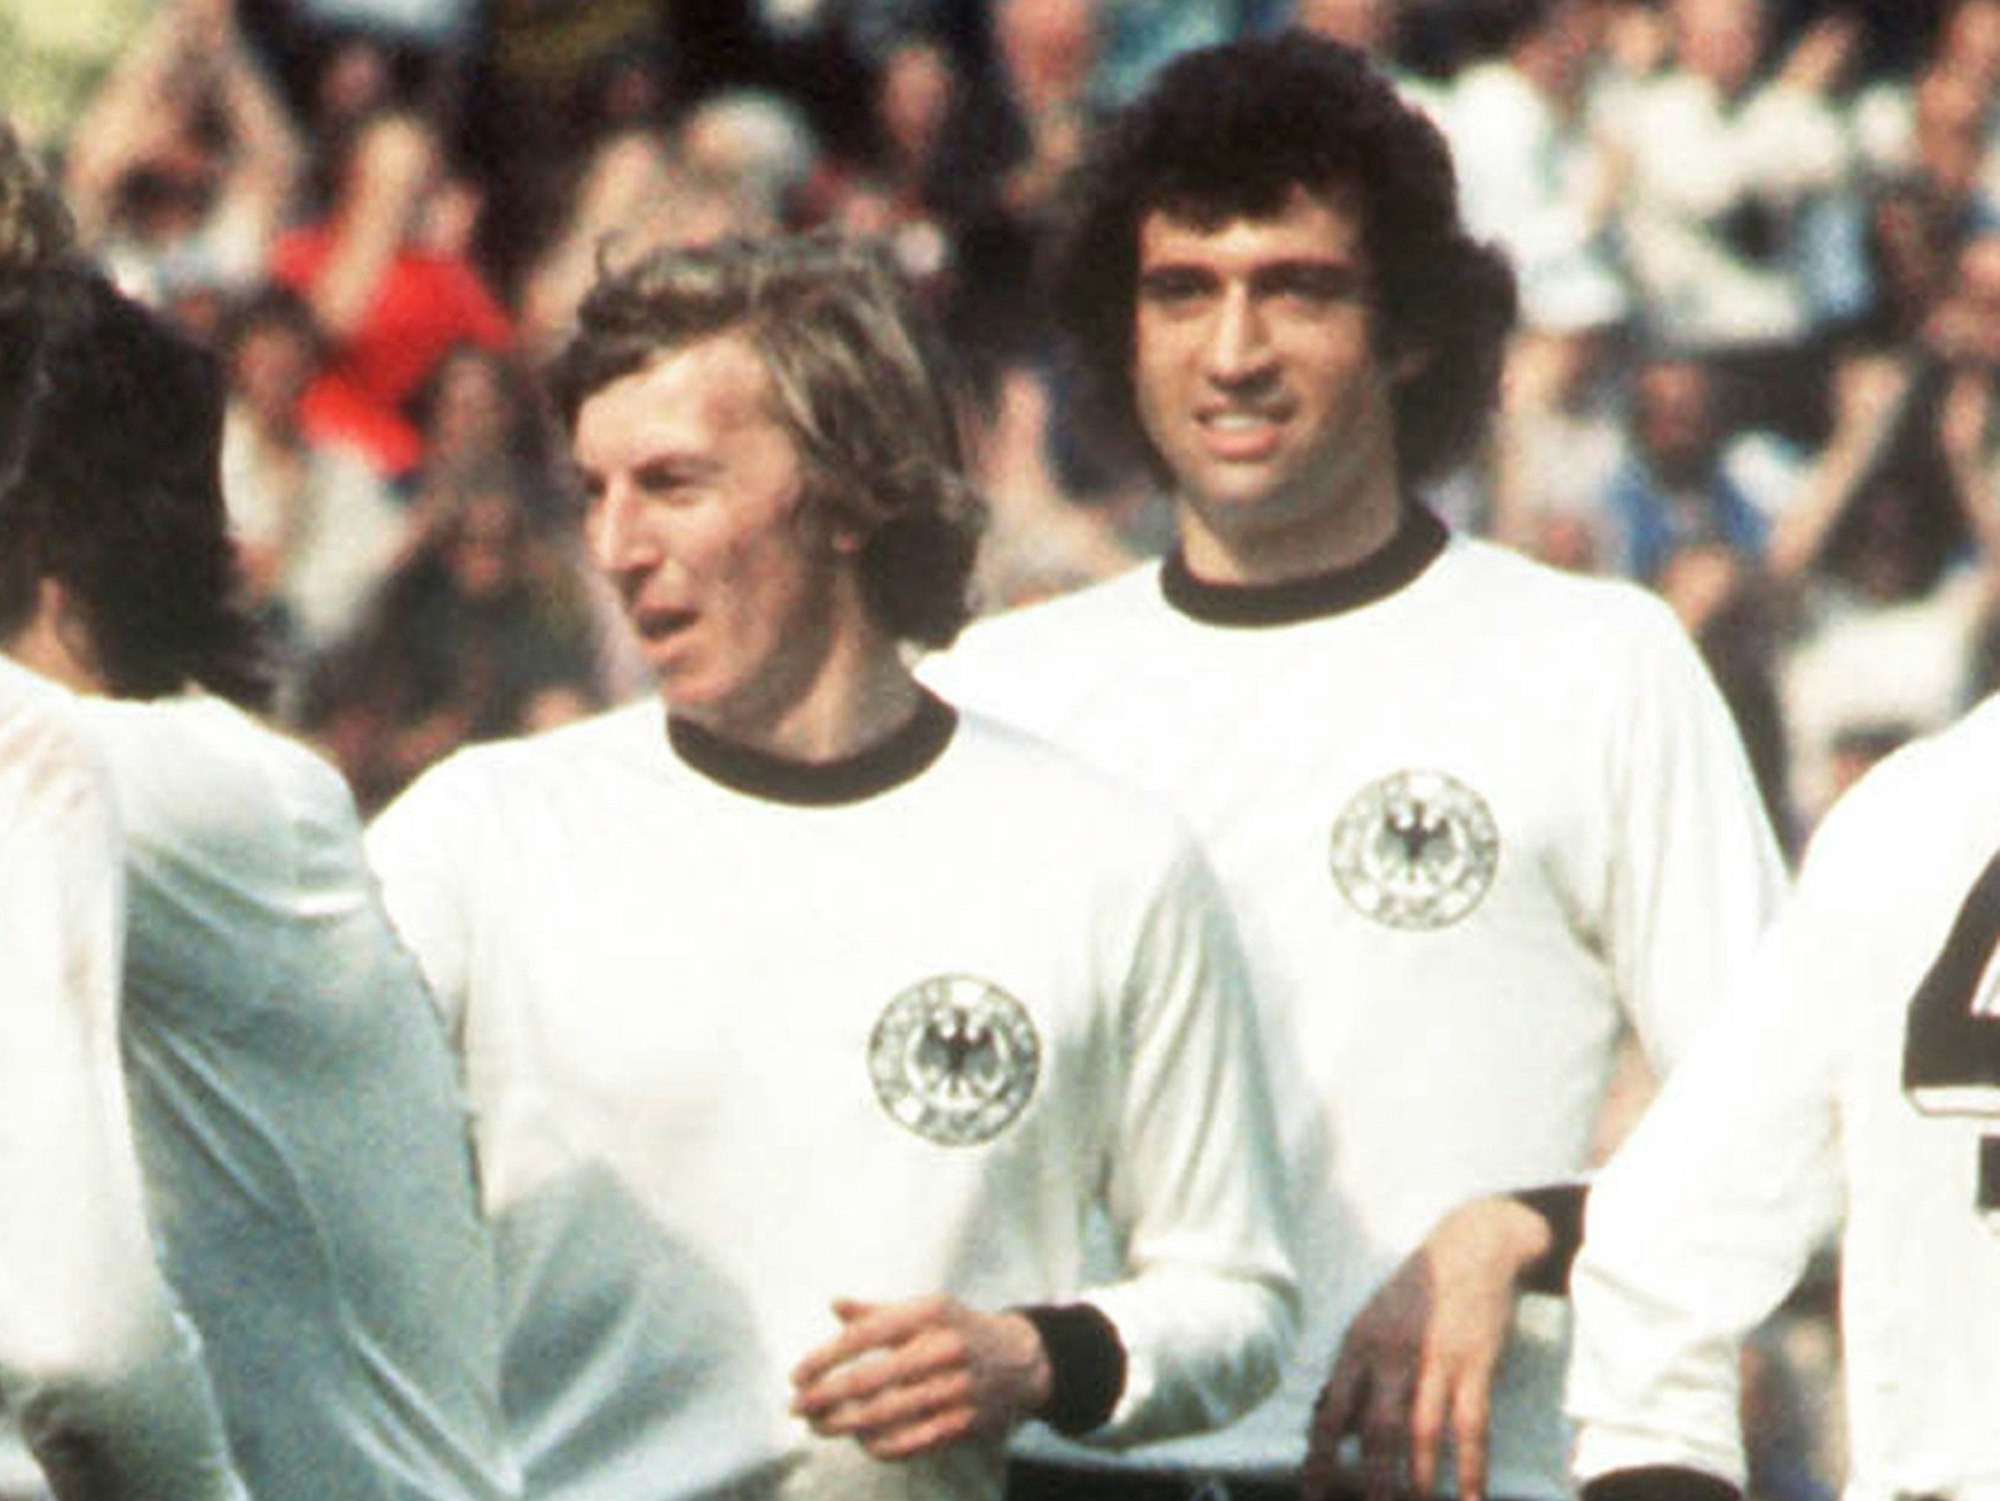 Bernd Cullmann steht neben dem mittlerweile verstorbenen Jürgen Grabowski.